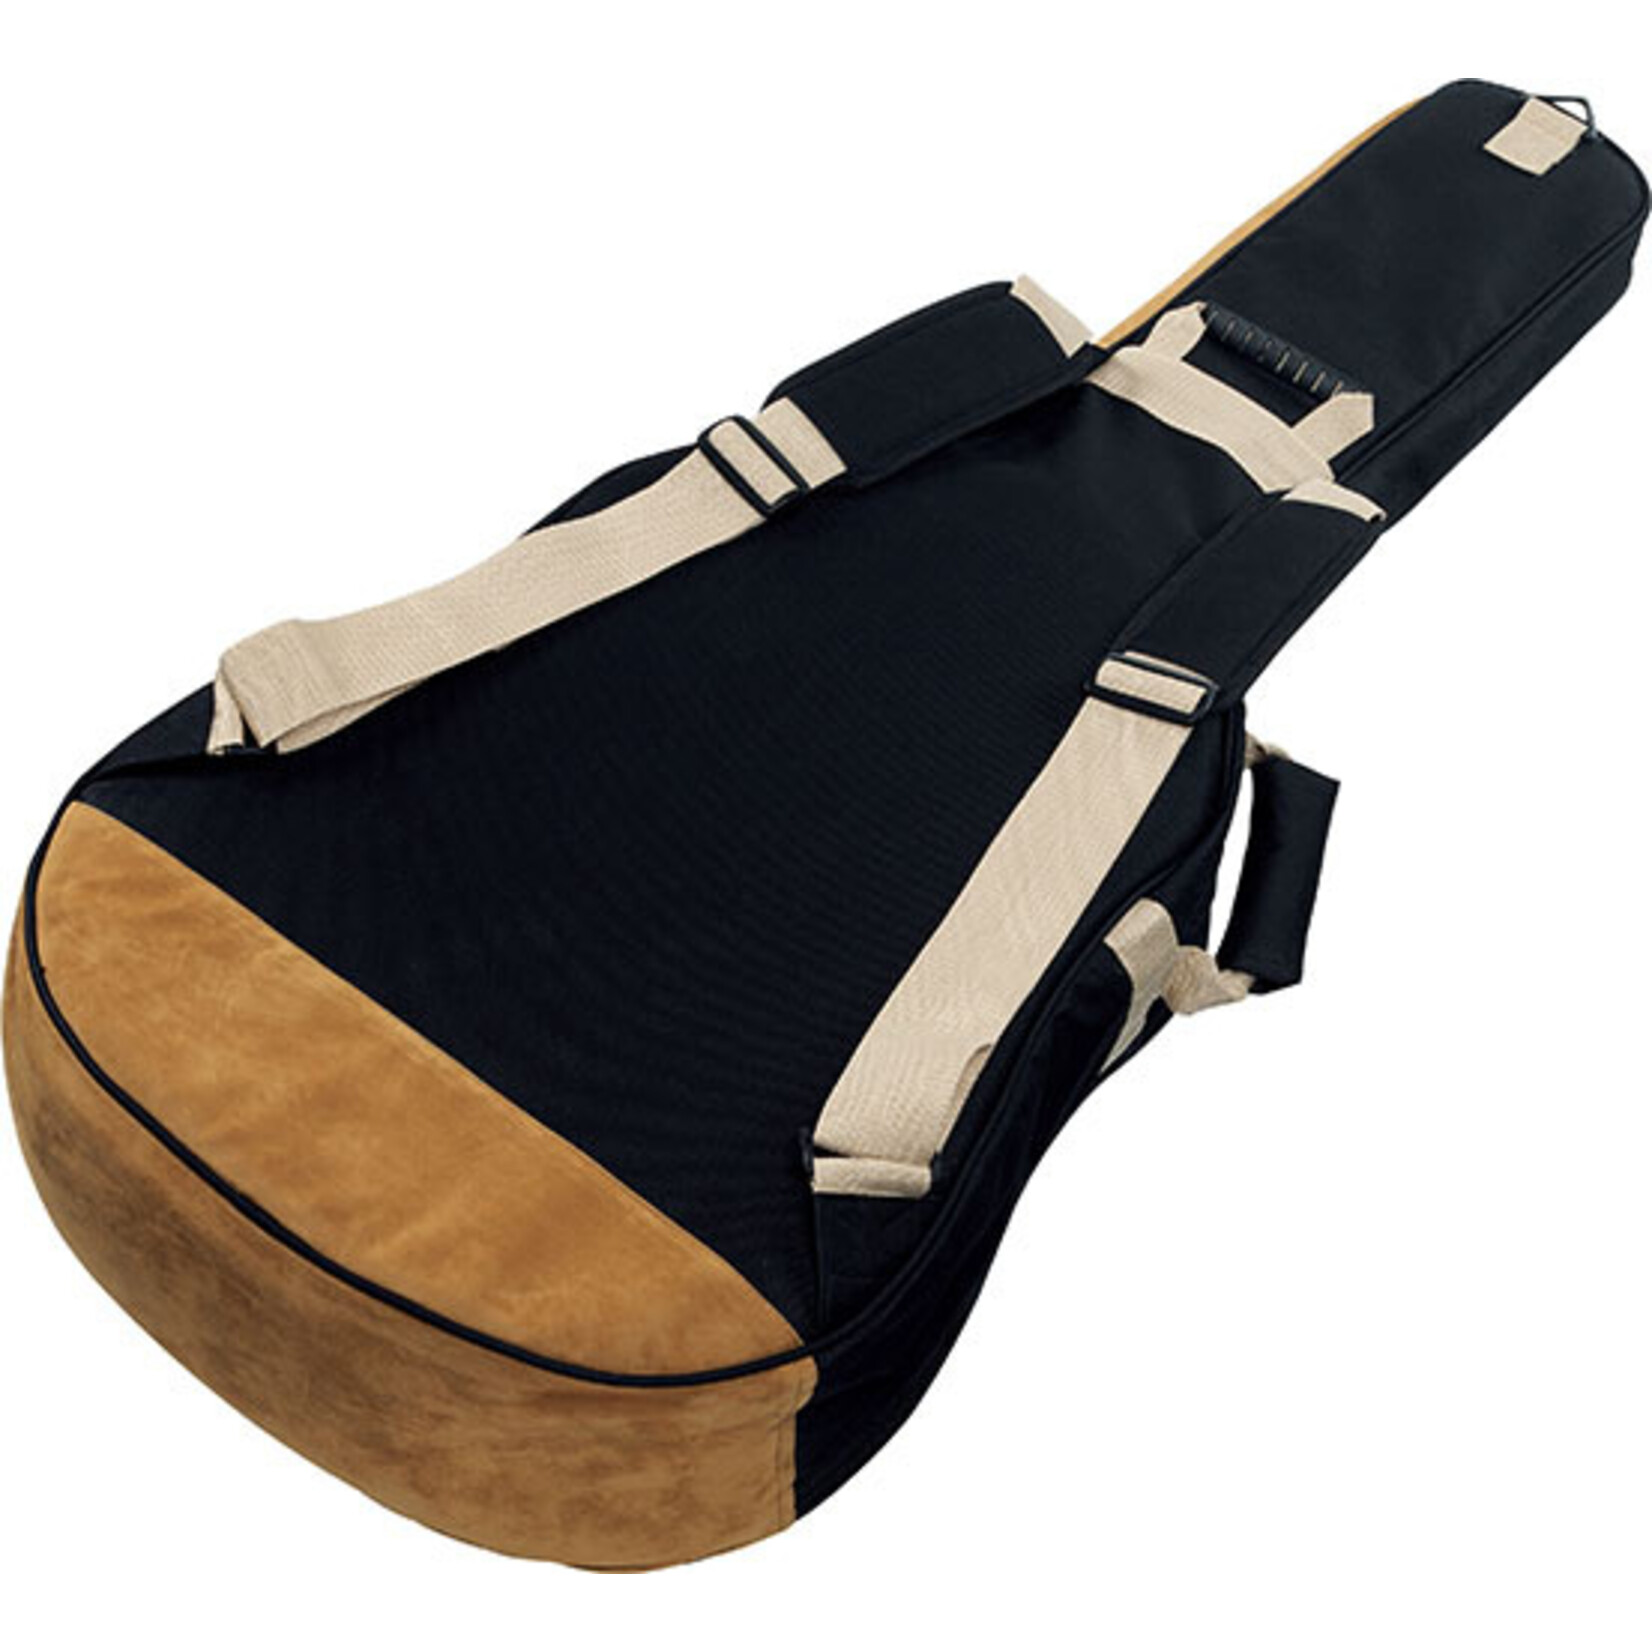 Ibanez Powerpad Designer Collection Acoustic Guitar Gig Bag - Black